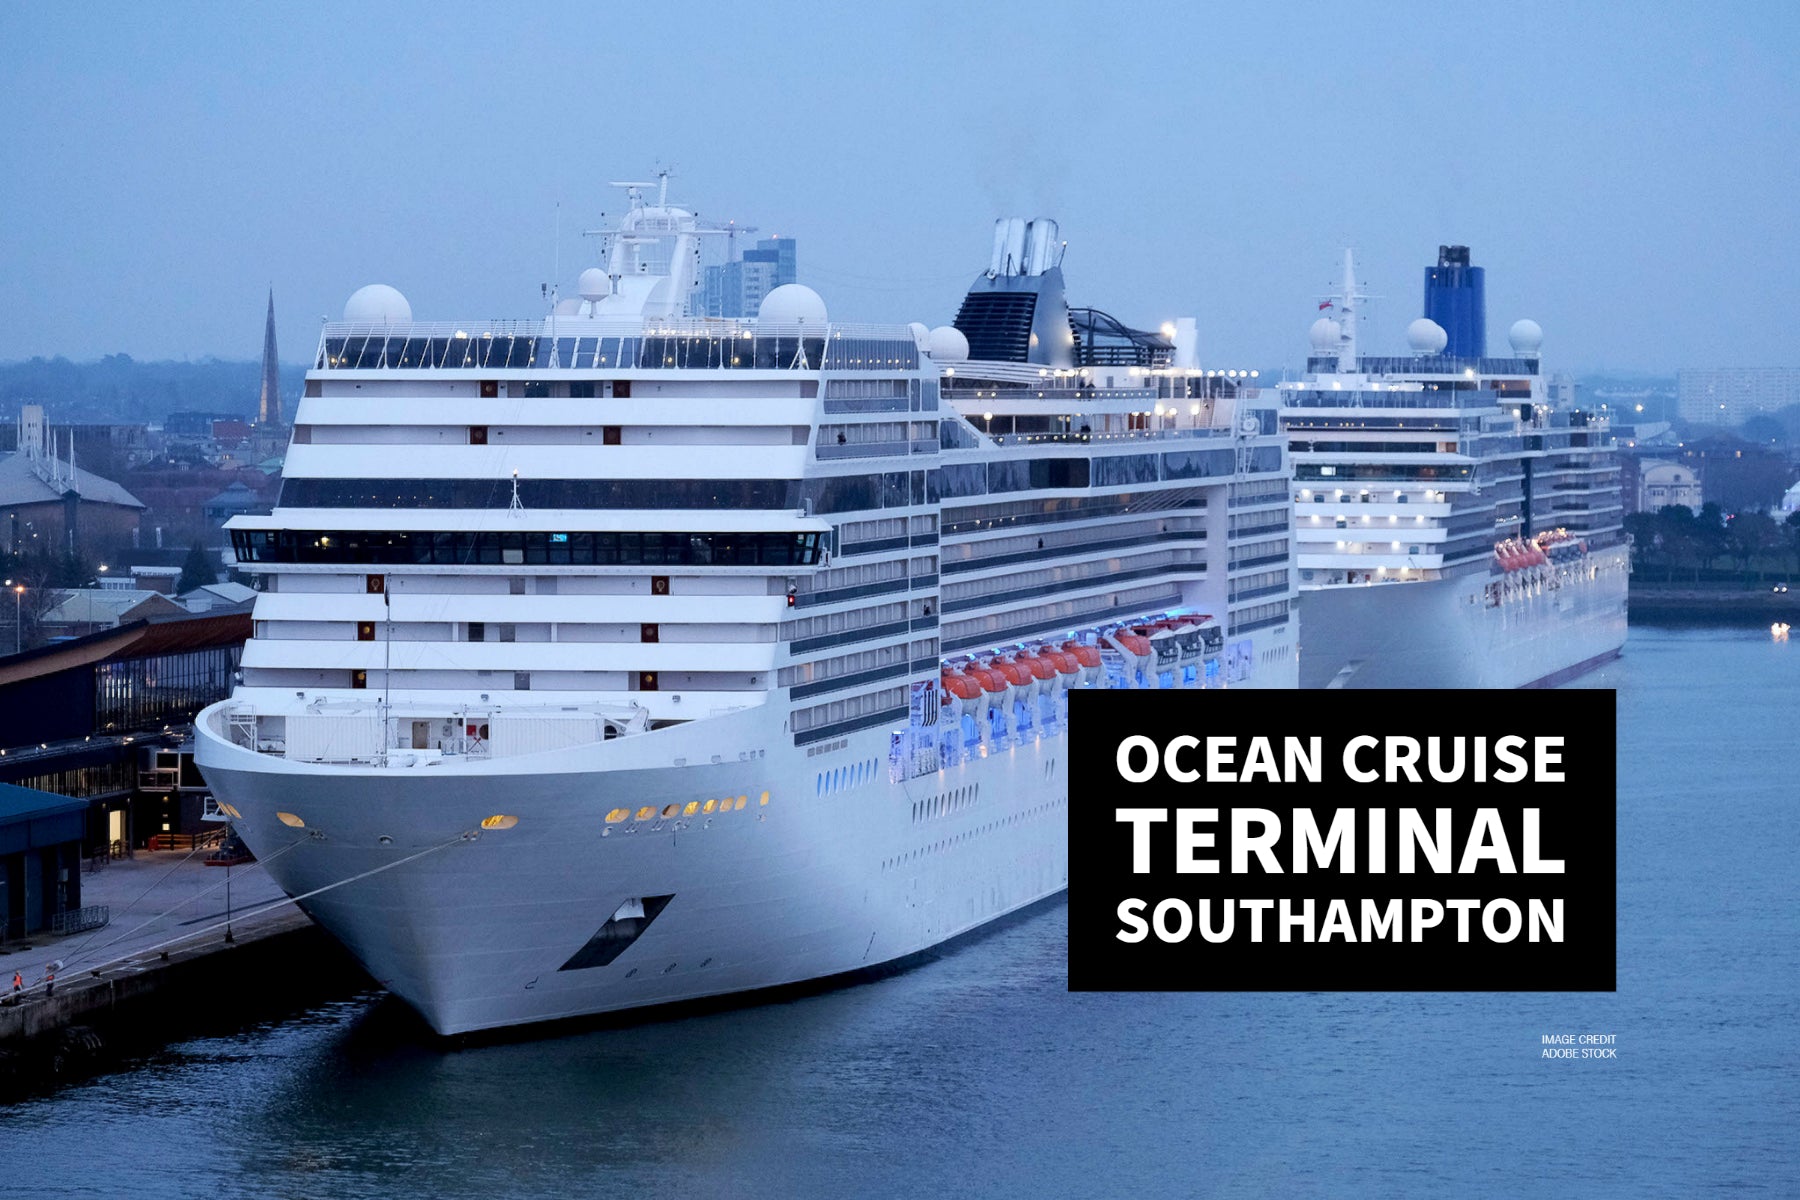 Ocean Cruise Terminal Southampton